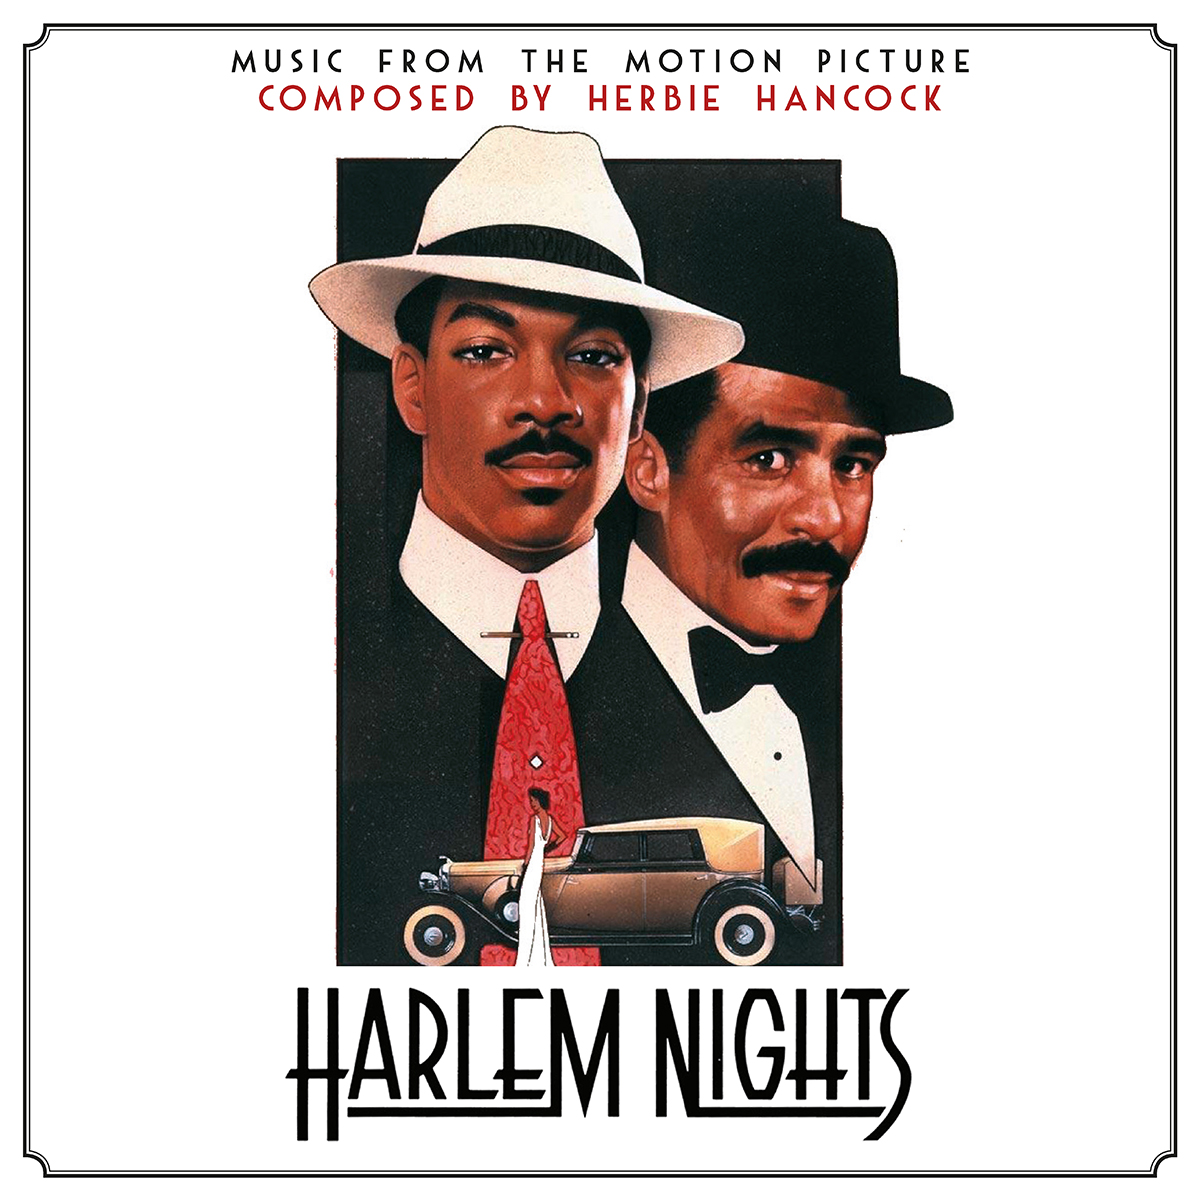 Les Nuits de Harlem (Harlem Nights)